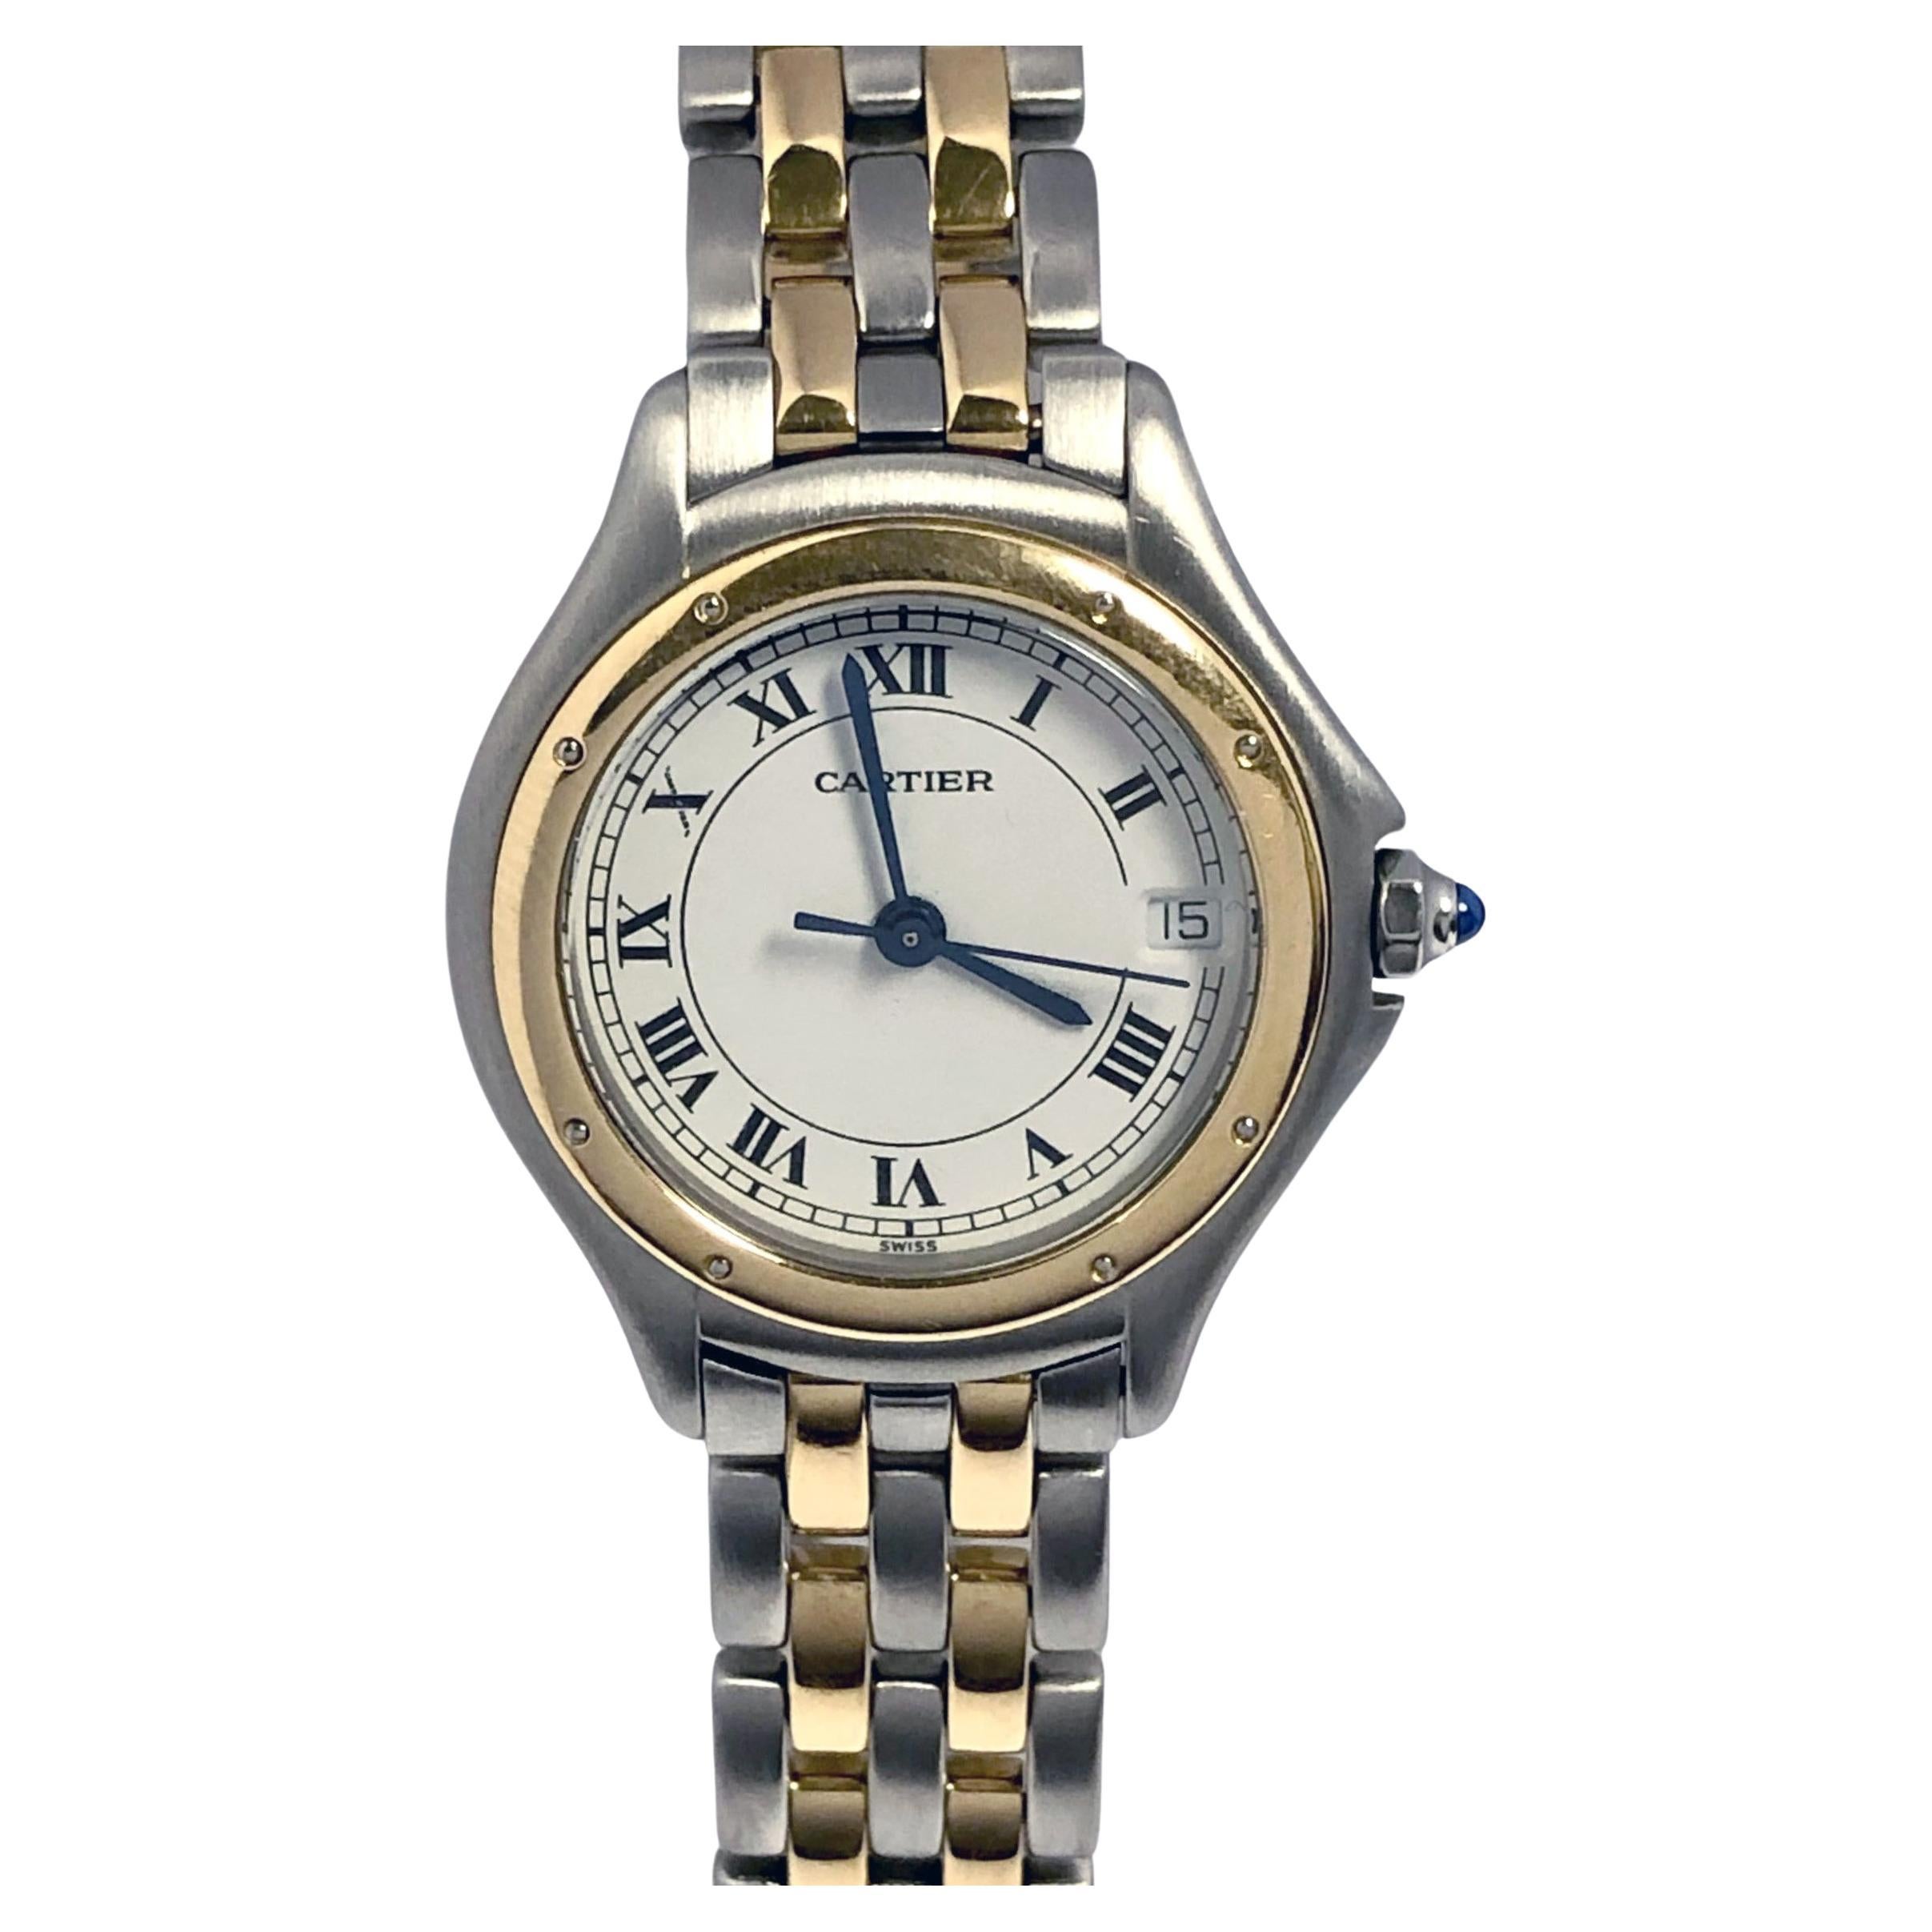 Cartier Cougar 18k and Steel ladies Quartz Wrist Watch